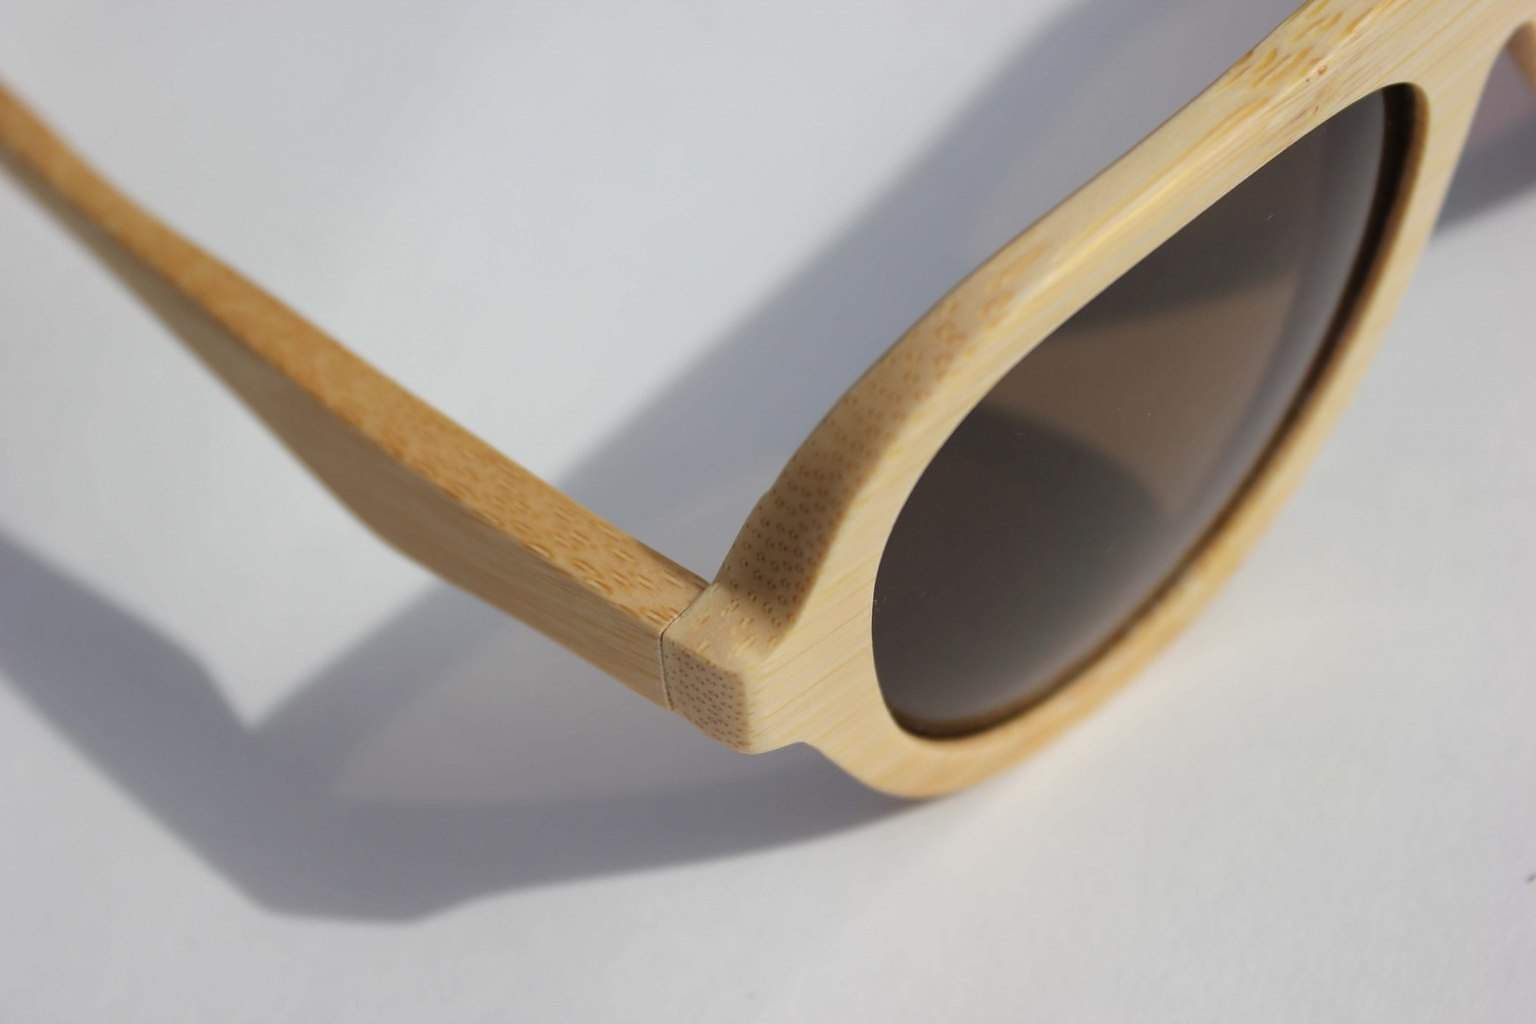 houten zonnebril